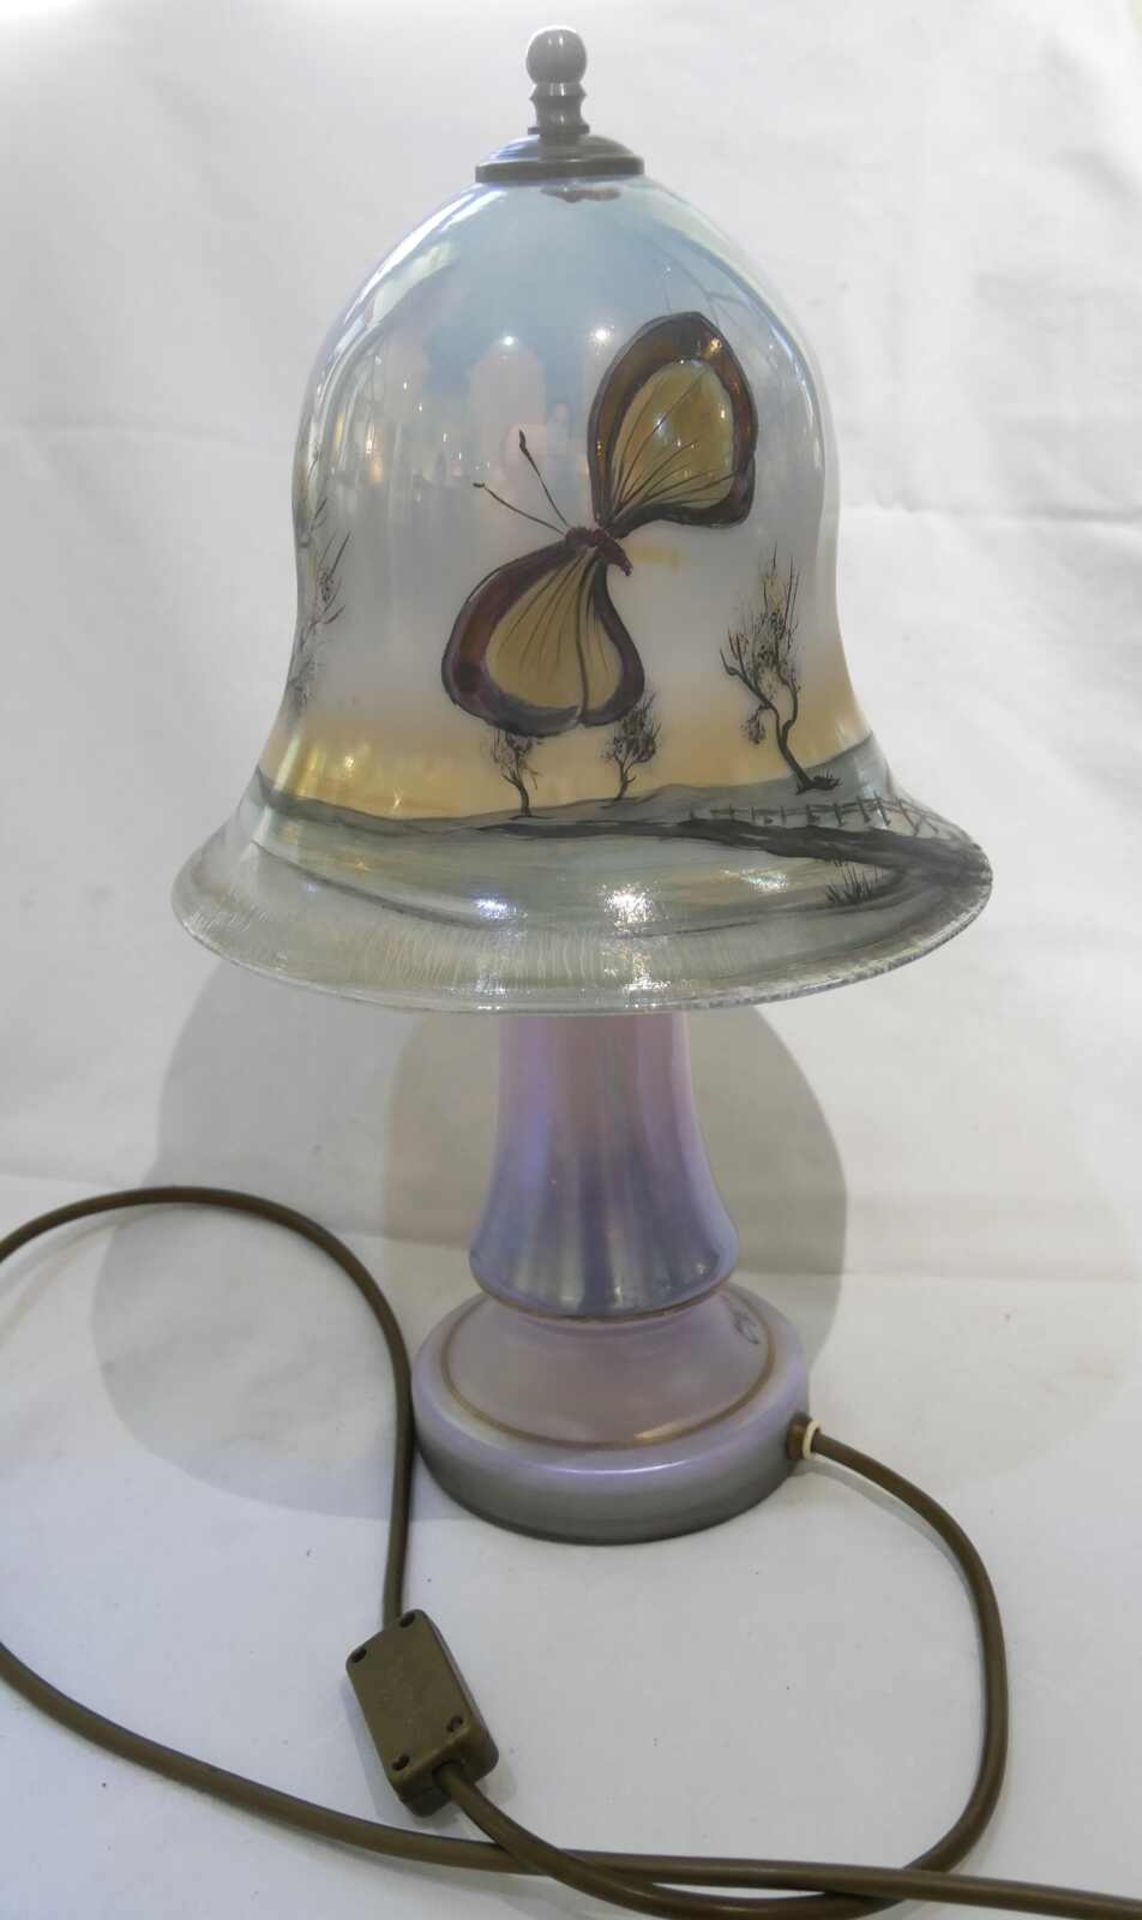 Original seltene Eisch Lampe, handbemalt und signiert Eisch 90, Malermonogramm, 2-flammig,